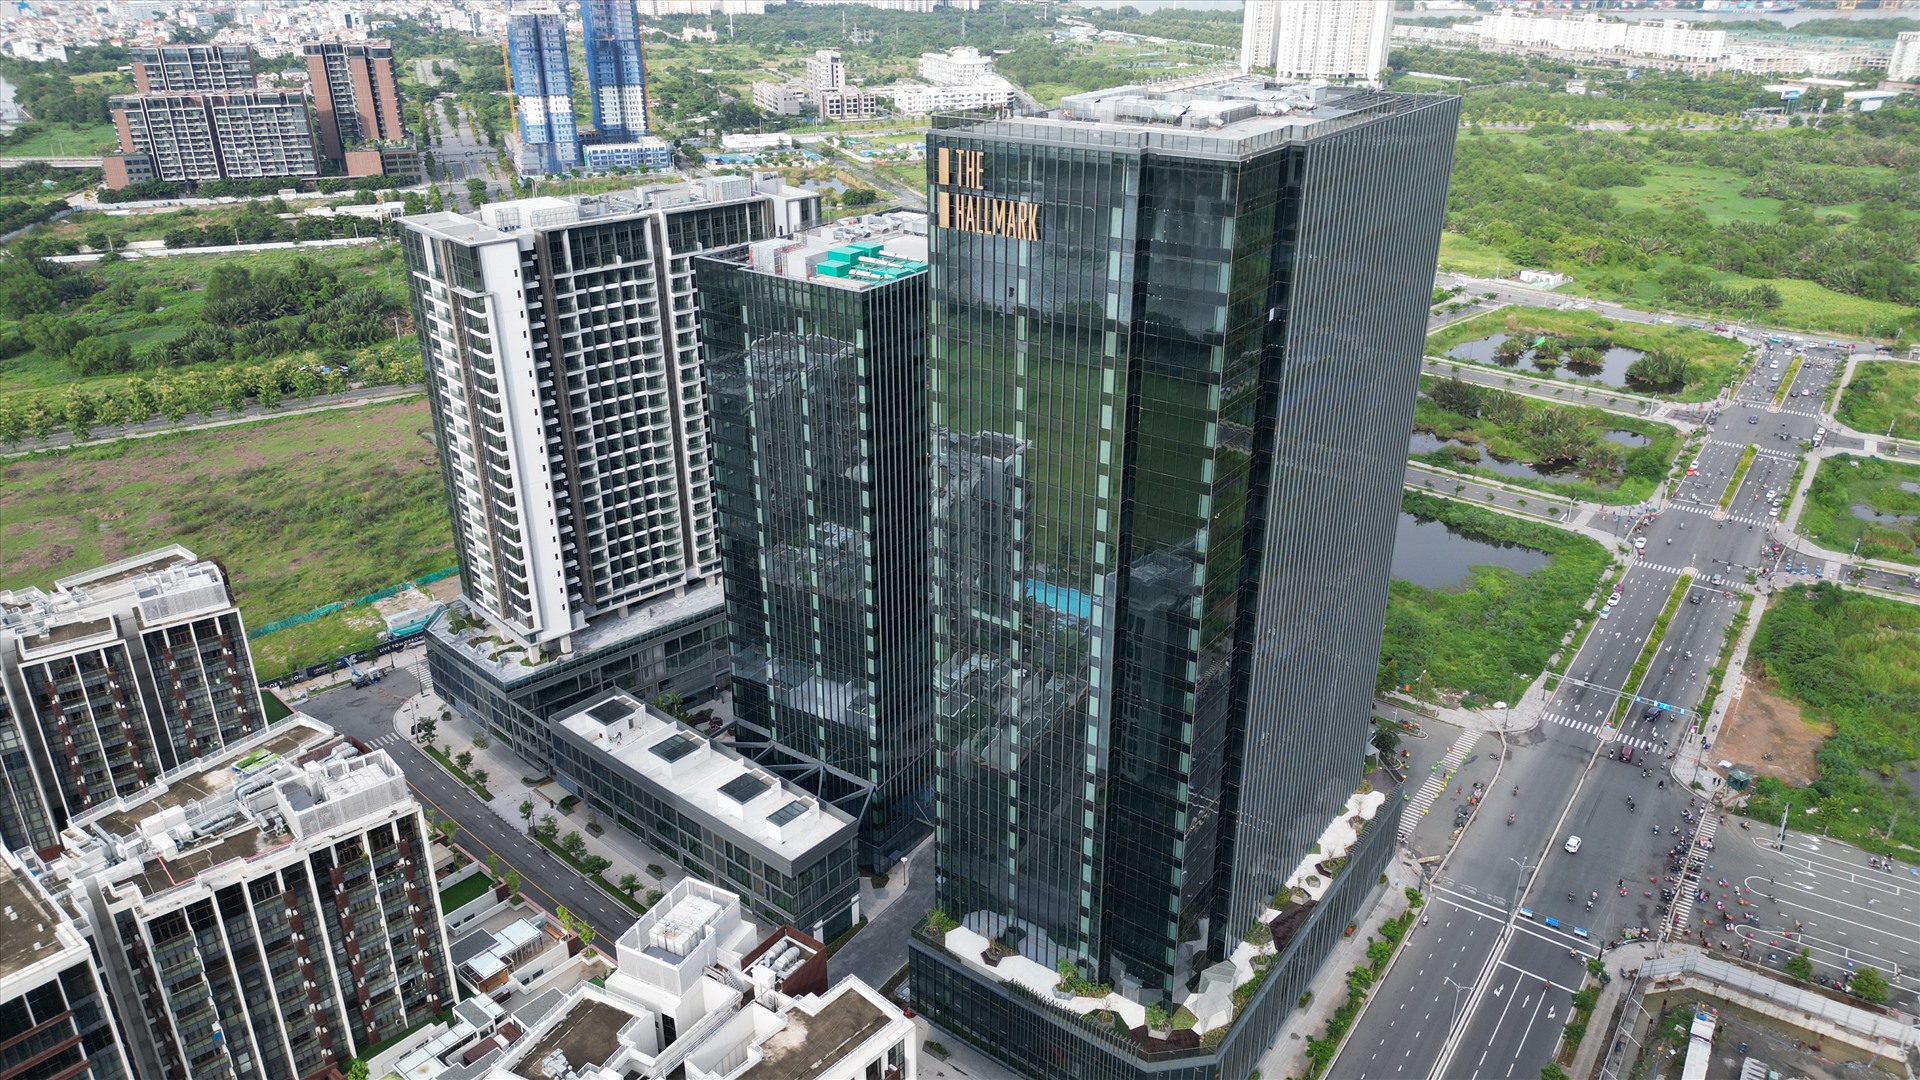 Trong đó, tòa nhà văn phòng The Hallmark có tổng diện tích sàn cho thuê lên đến 68.000 m2, được xếp hạng A+ với chứng chỉ công trình xanh Green Mark (Gold) của Singapore.